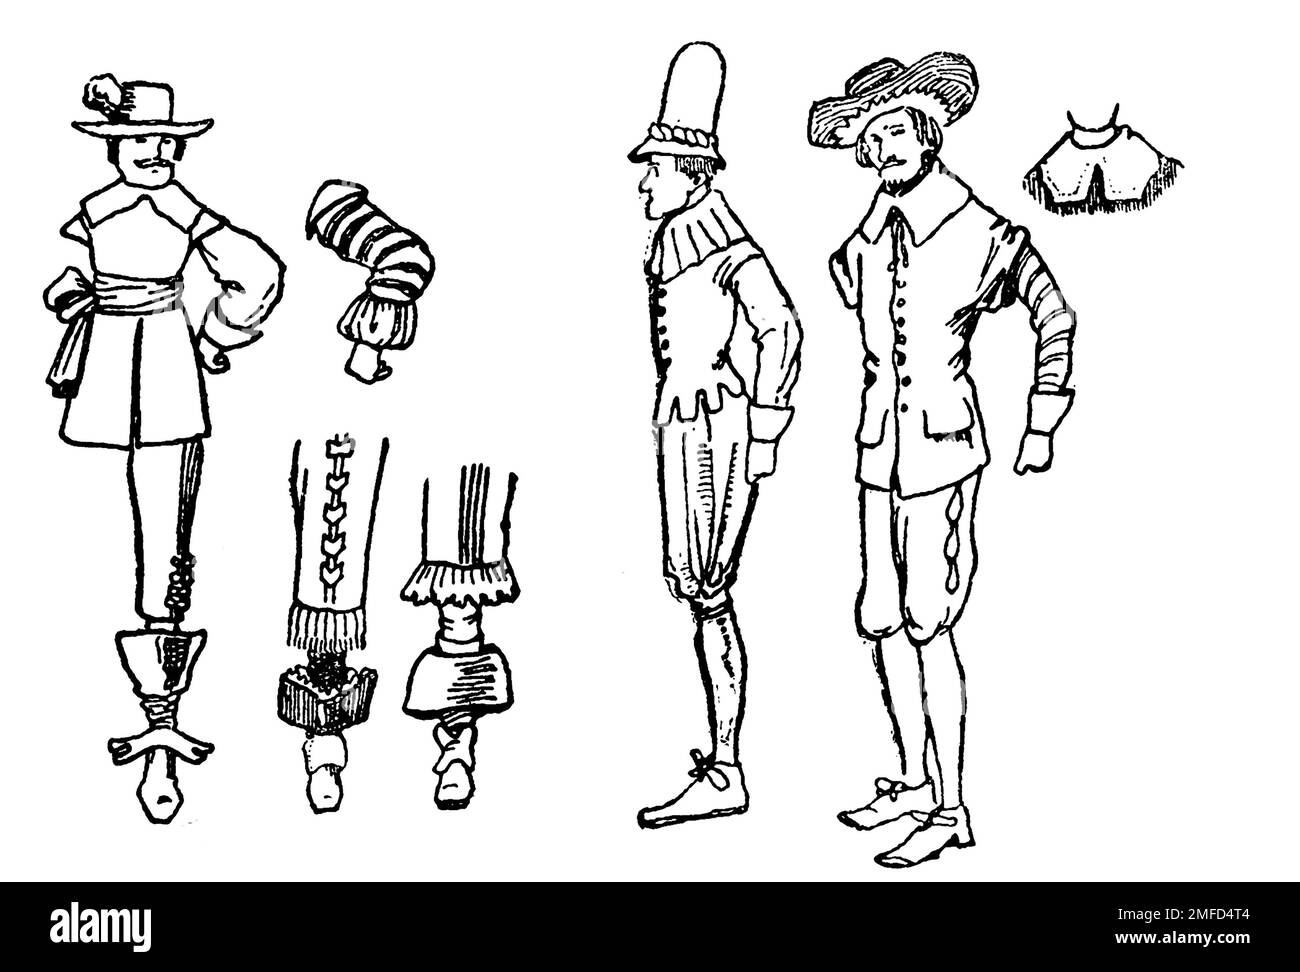 Strichzeichnung der kromwellianischen Mode aus dem Buch " English Costume " von Dion Clayton Calthrop, 1878-1937 Publikationsdatum 1907 Publisher London, A. & C. Black Stockfoto